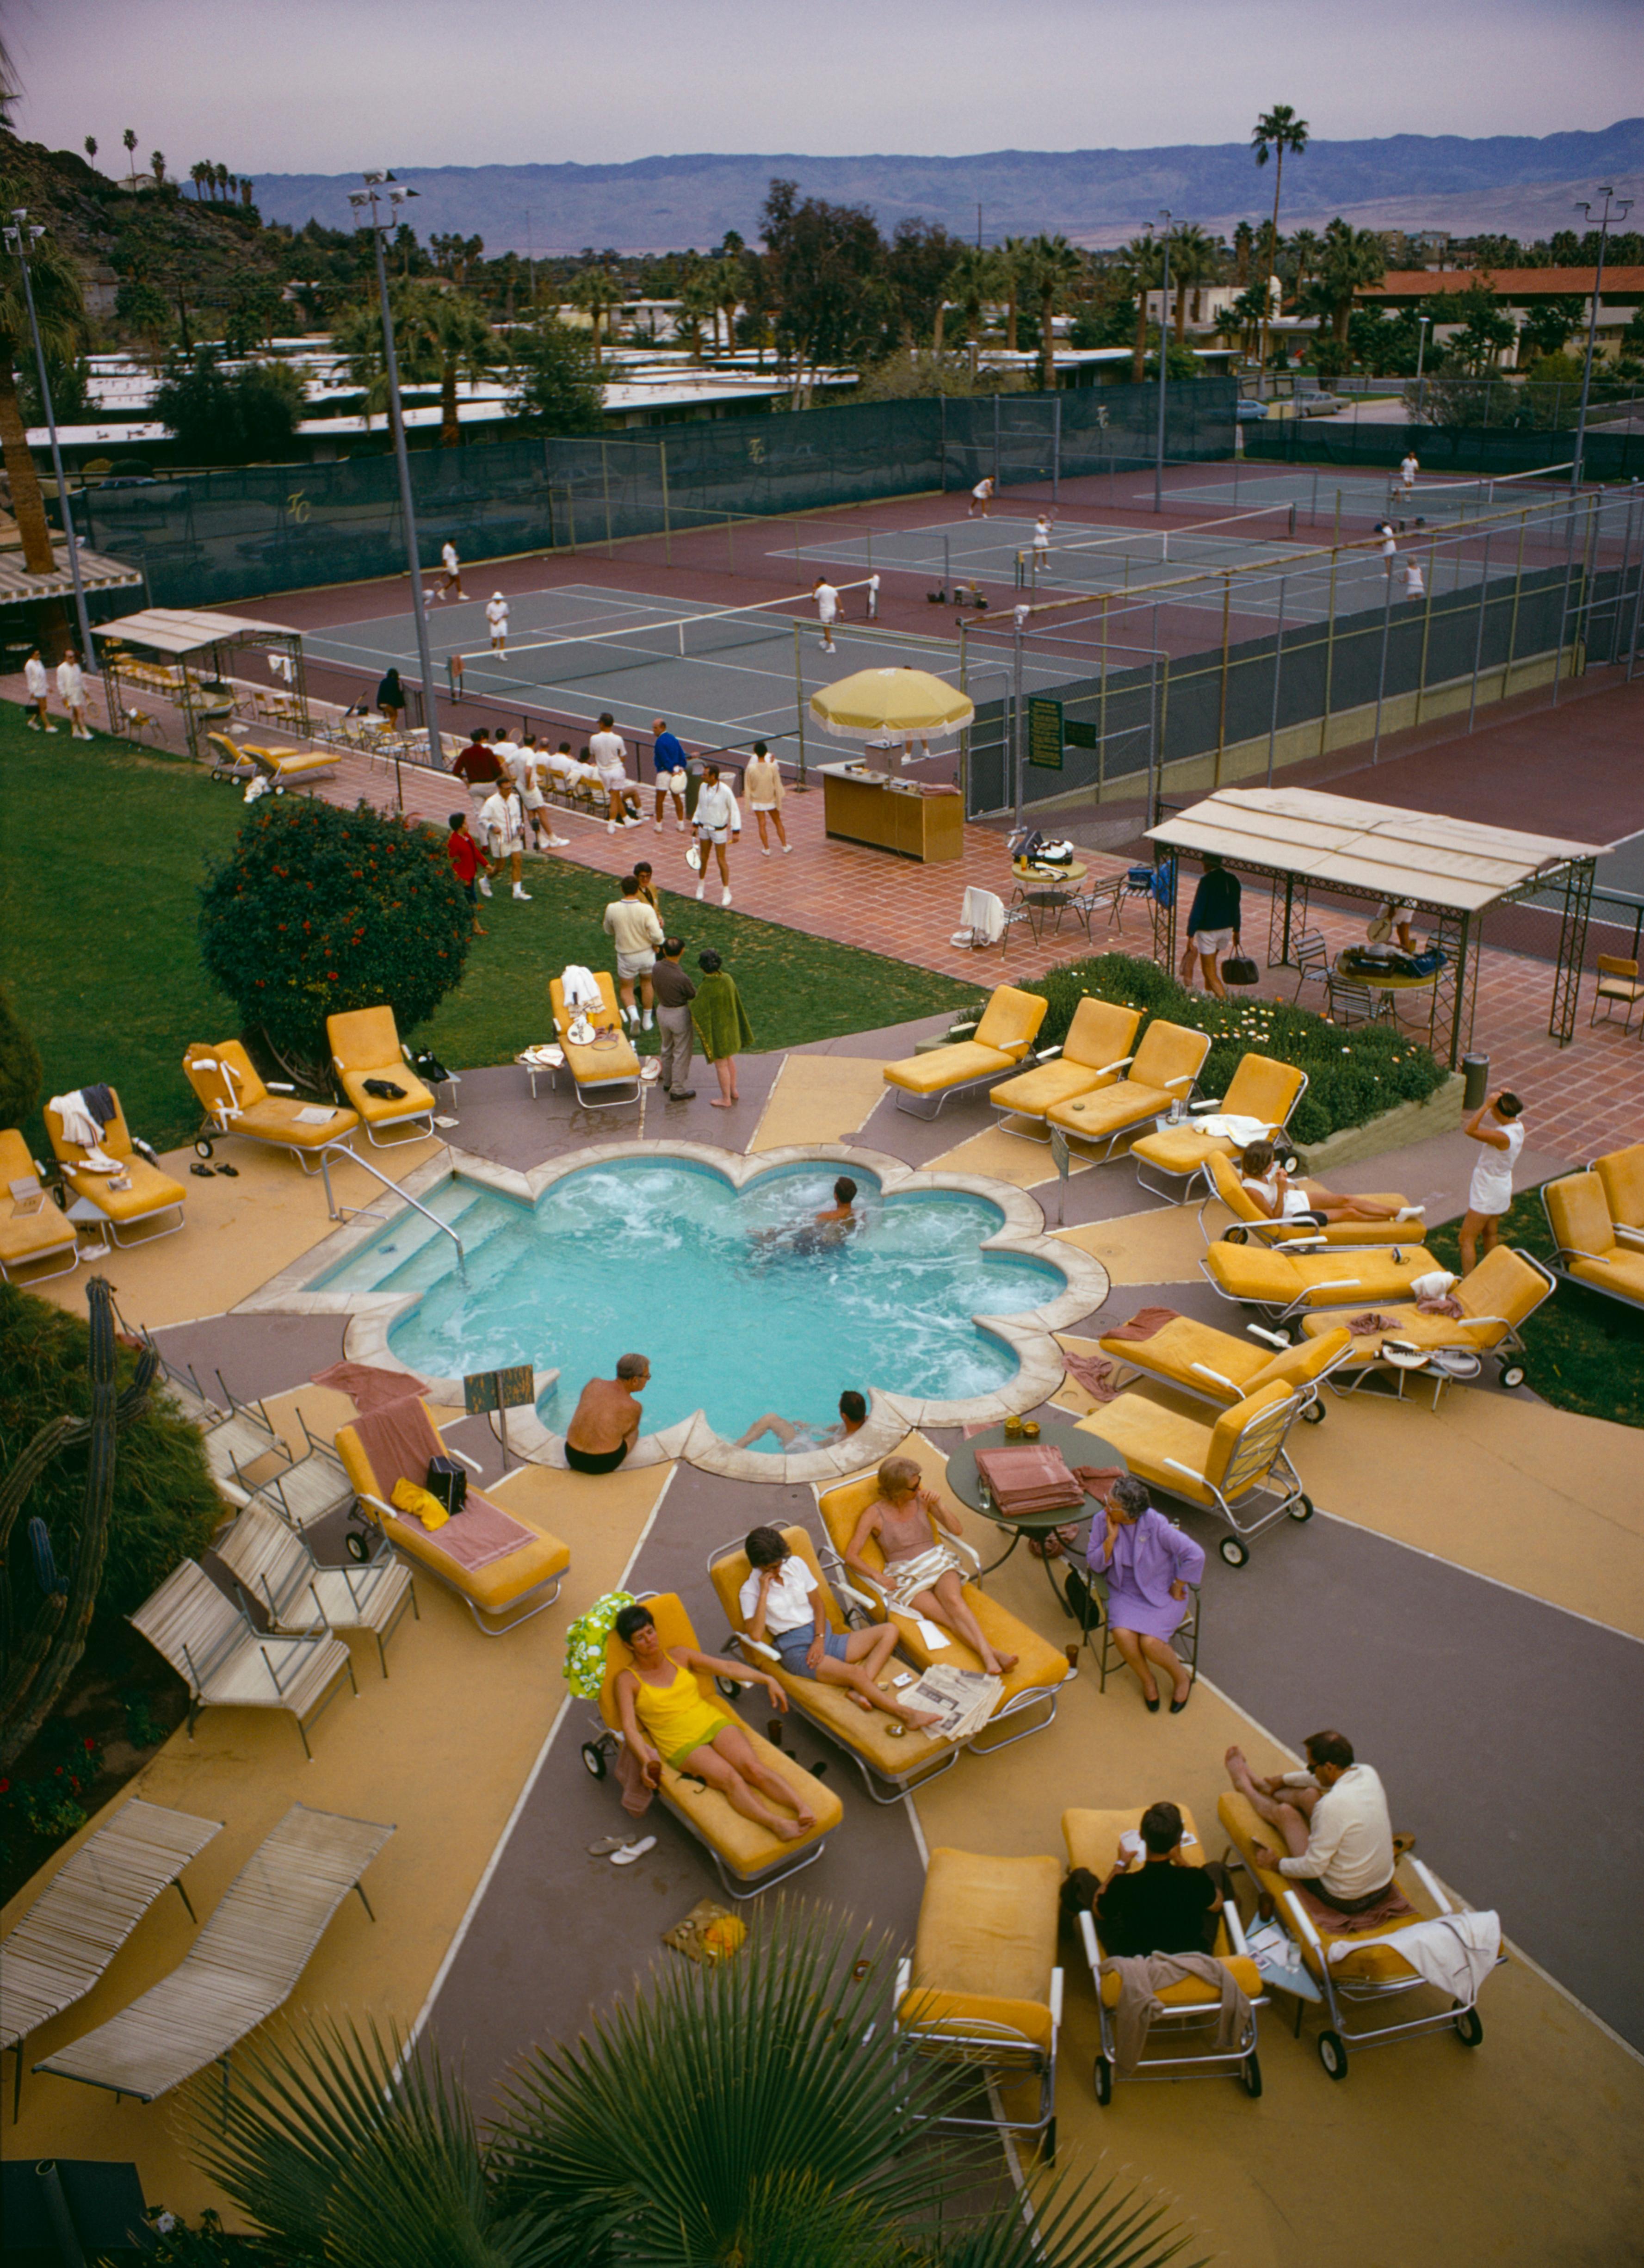 Schlanke Aarons
Entspannen im Club
1970
Chromogener Lambda-Druck
Nachlassgestempelte und handnummerierte Auflage von 150 Stück mit Echtheitszertifikat. 

Mitglieder sonnen sich am Pool des Palm Springs Tennis Club, Kalifornien, ca. 1970. (Foto: Slim